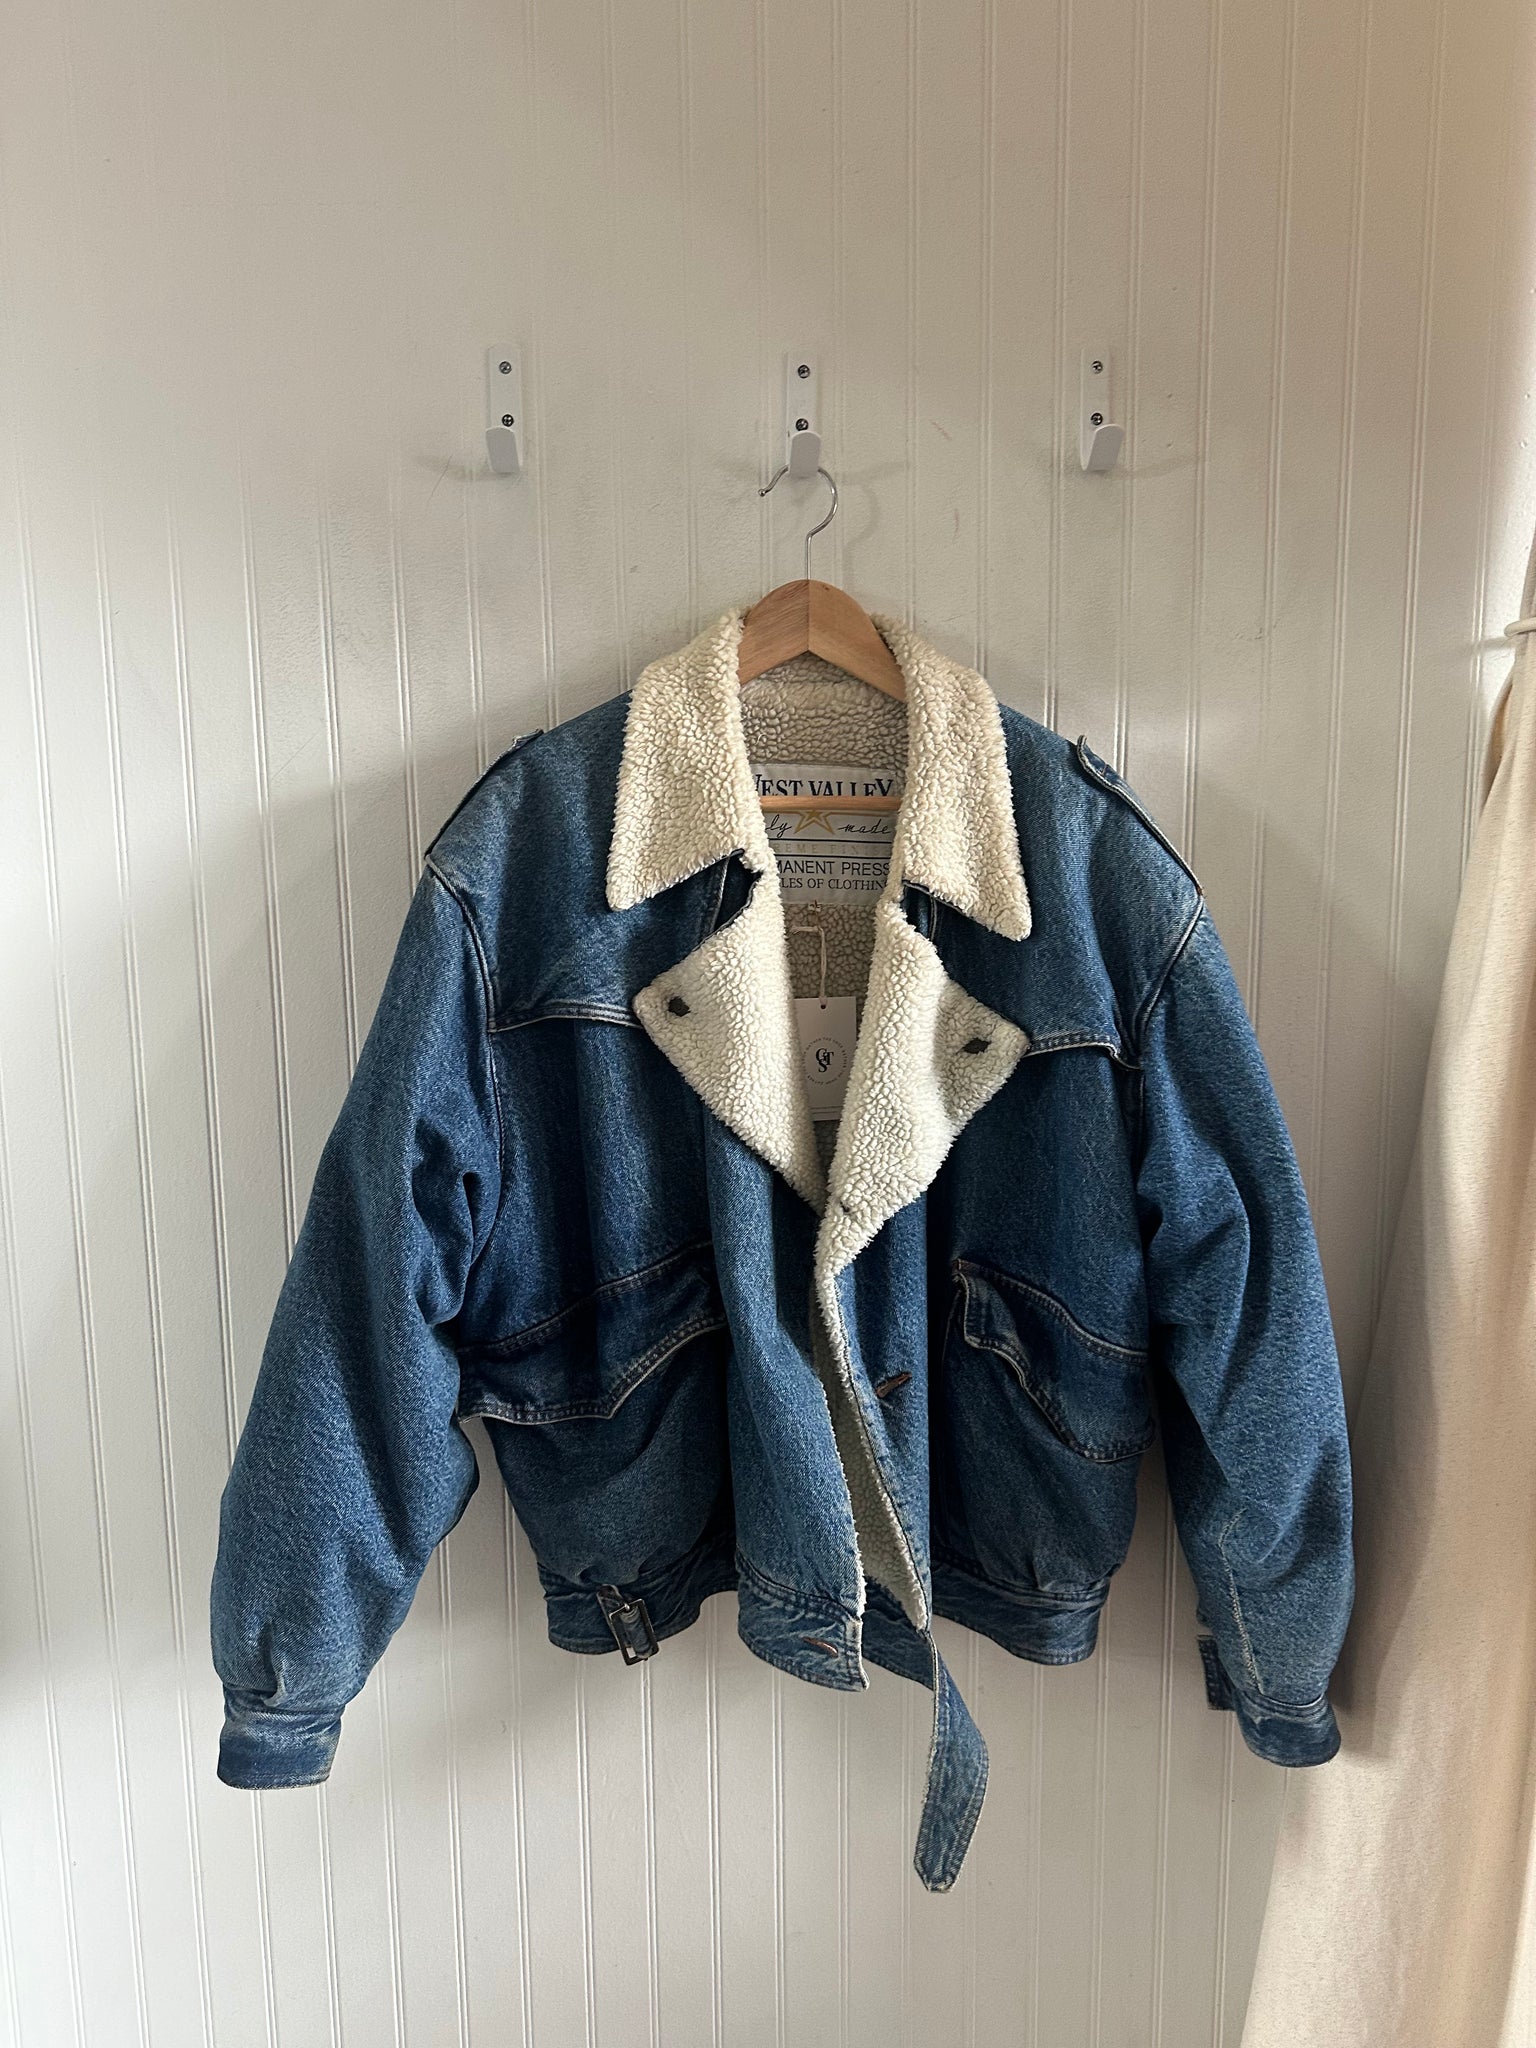 Vintage Sherpa lined denim jacket